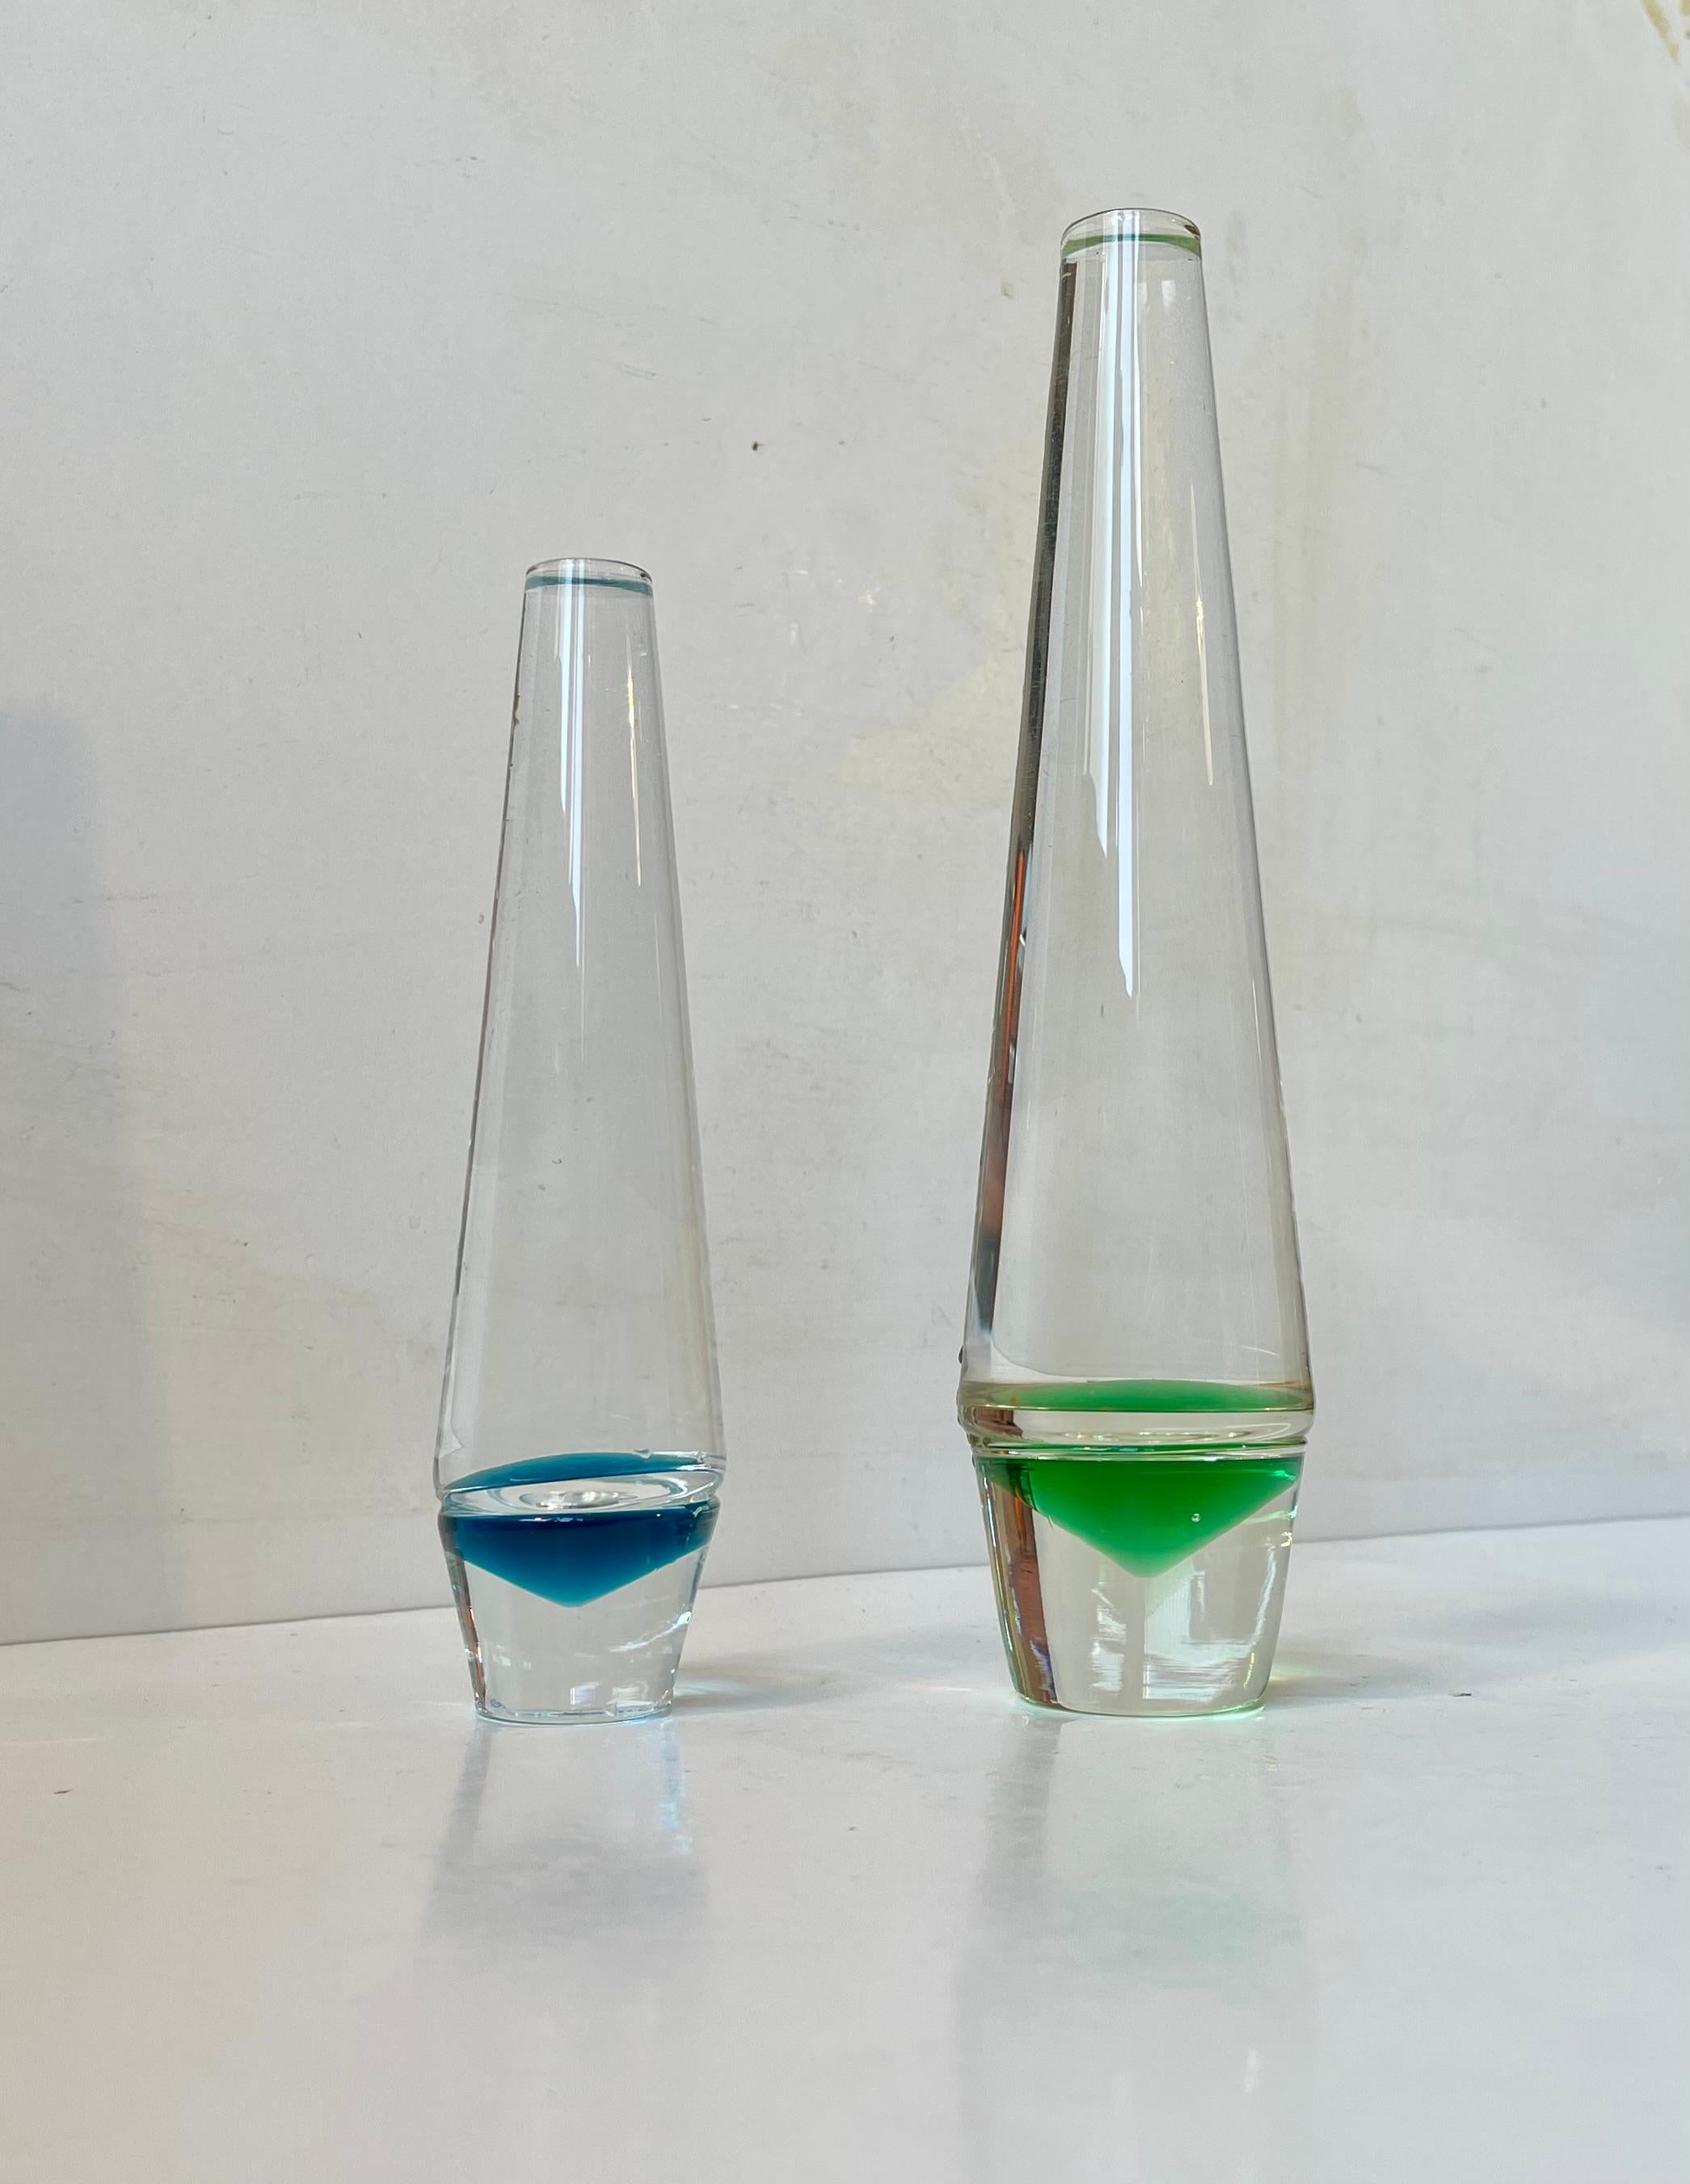 Ensemble de vases à fleurs simples - solifleur. Conçu par Christer Holmgren en 1965 et fabriqué par Holmegaard au Danemark. Décor de pyramide inversée en verre bleu et vert. Dimensions : H : 25/18,5 cm. Diamètre : 6/4,5 cm. 

Le prix est pour le lot